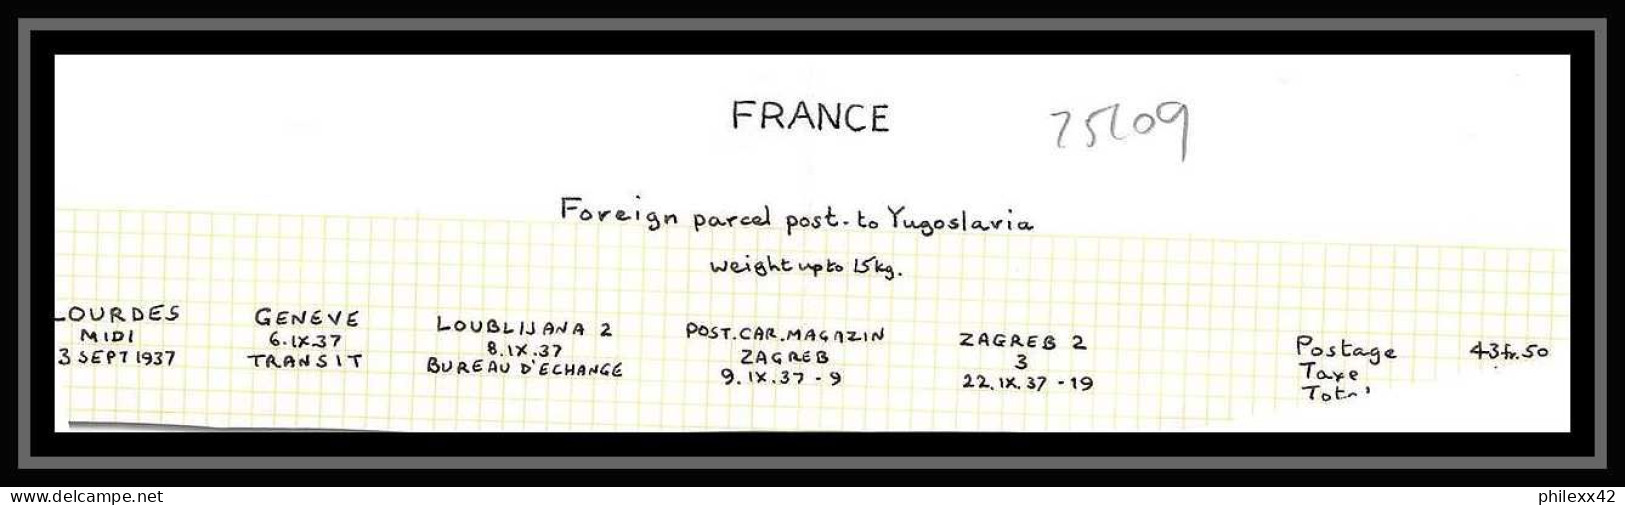 25109 Bulletin D'expédition France Colis Postaux Fiscal Lourdes 3/9/1937 Zagreb Croatie Croatia GENEVE Suisse (Swiss) - Brieven & Documenten